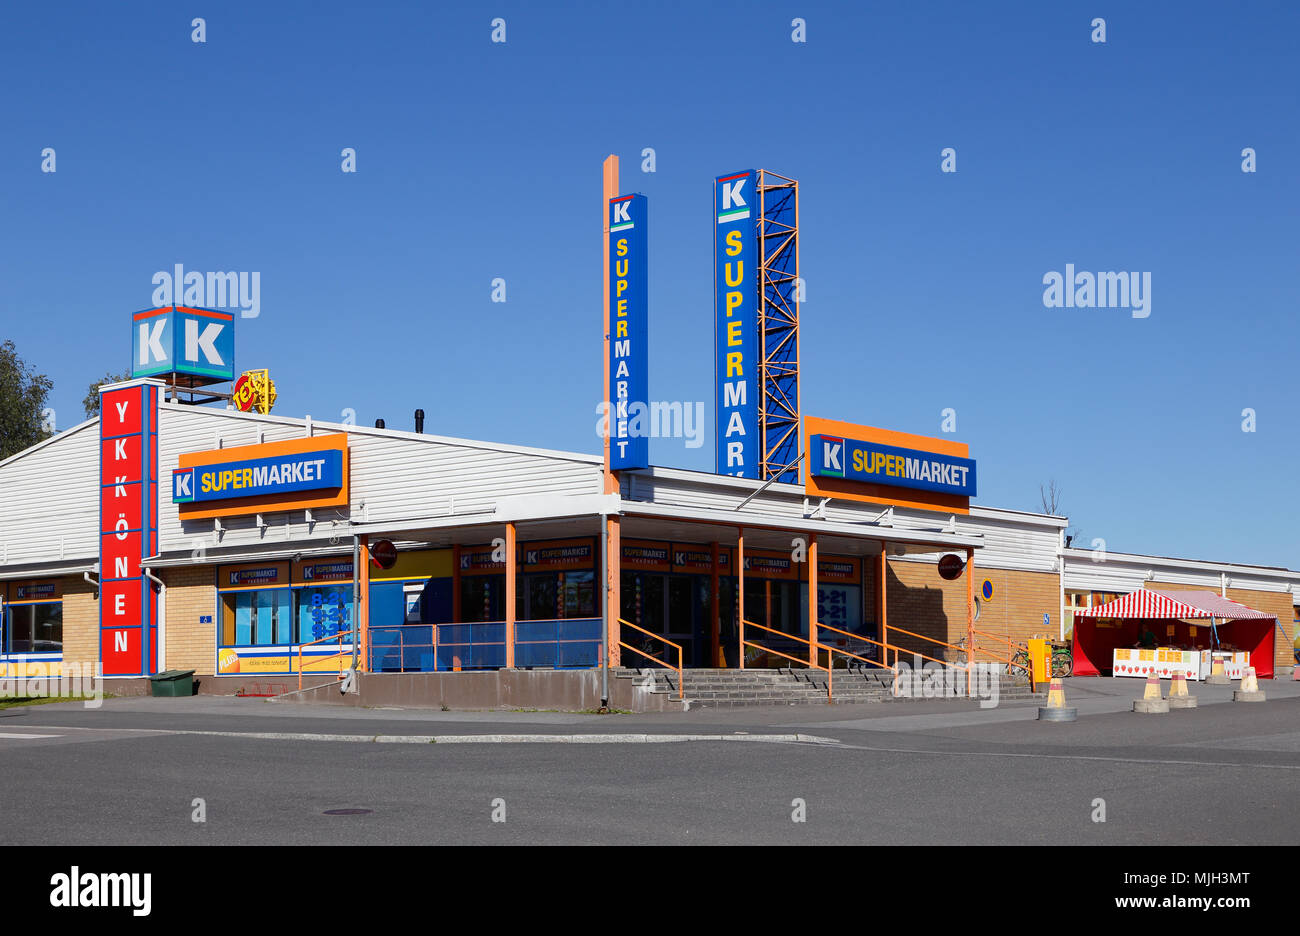 Tornio, Finnland - 20 Juli 2016 : Äußeres der Supermarkt K-Supermarkt Ykkonen Gebäude Mitglied des Finnischen Kesko-Gruppe. Stockfoto